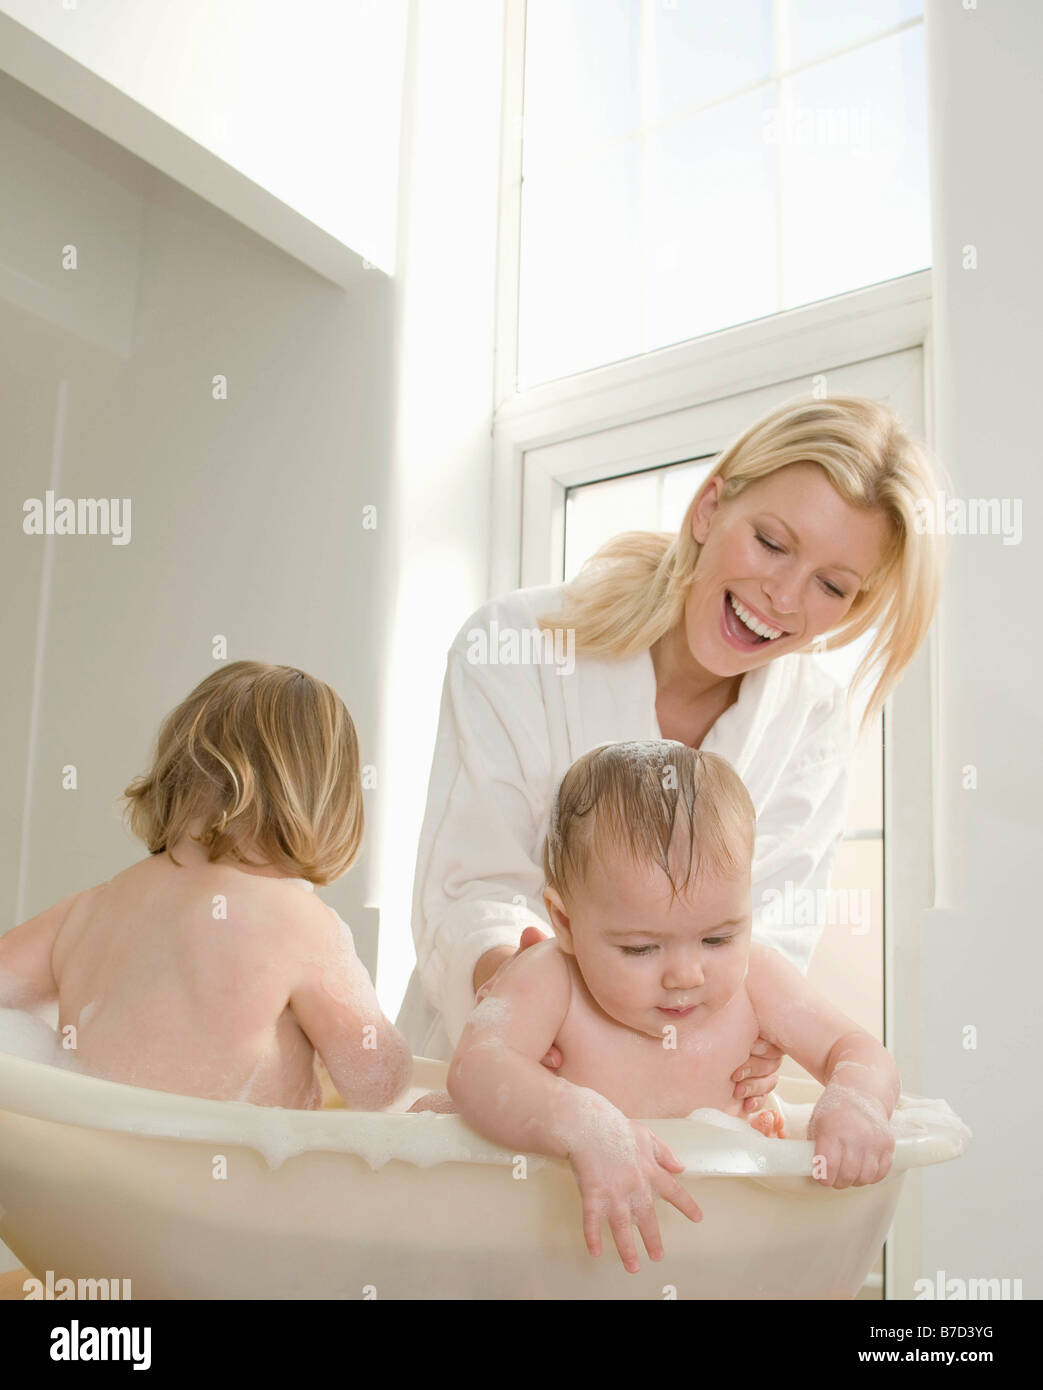 Японские мамы в ванной. Мать купает ребенка. Мама купается с детьми в ванной. Фотосессия мама и малыш в ванной. Мама с ребенком в ванной комнате.